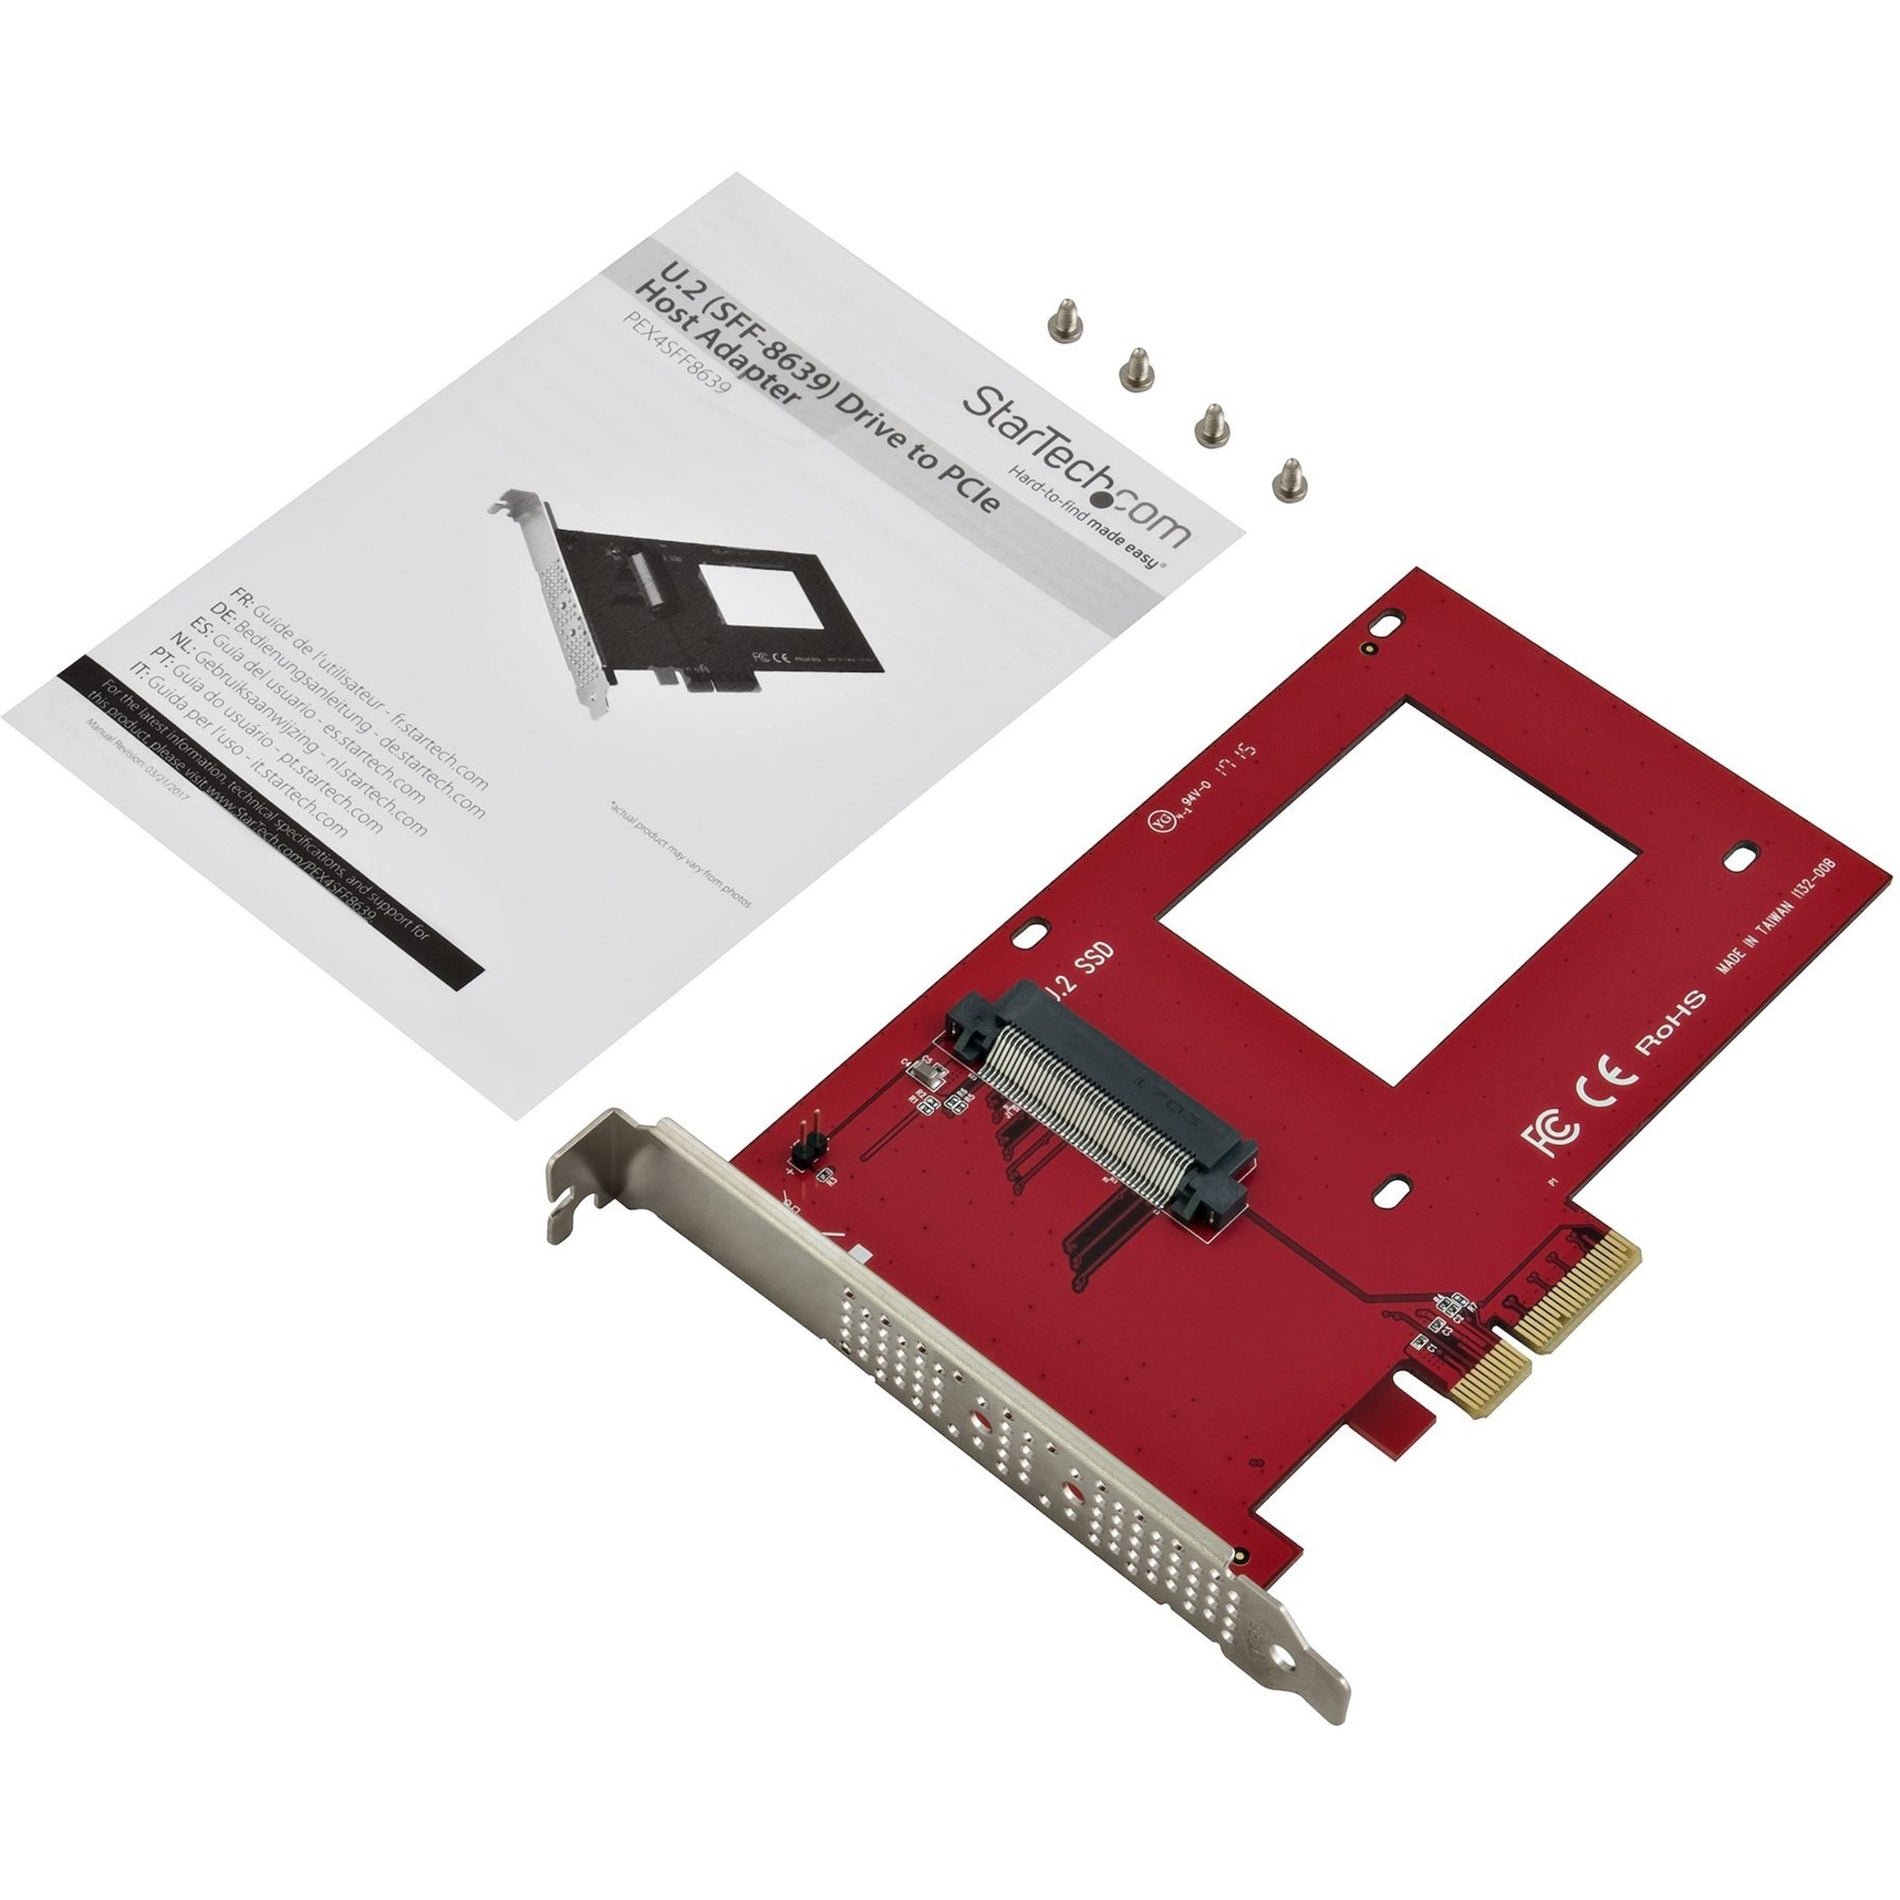 StarTech.com PEX4SFF8639 U.2 to PCIe Adapter for 2.5" U.2 NVMe SSD, SFF-8639, x4 PCI Express 3.0